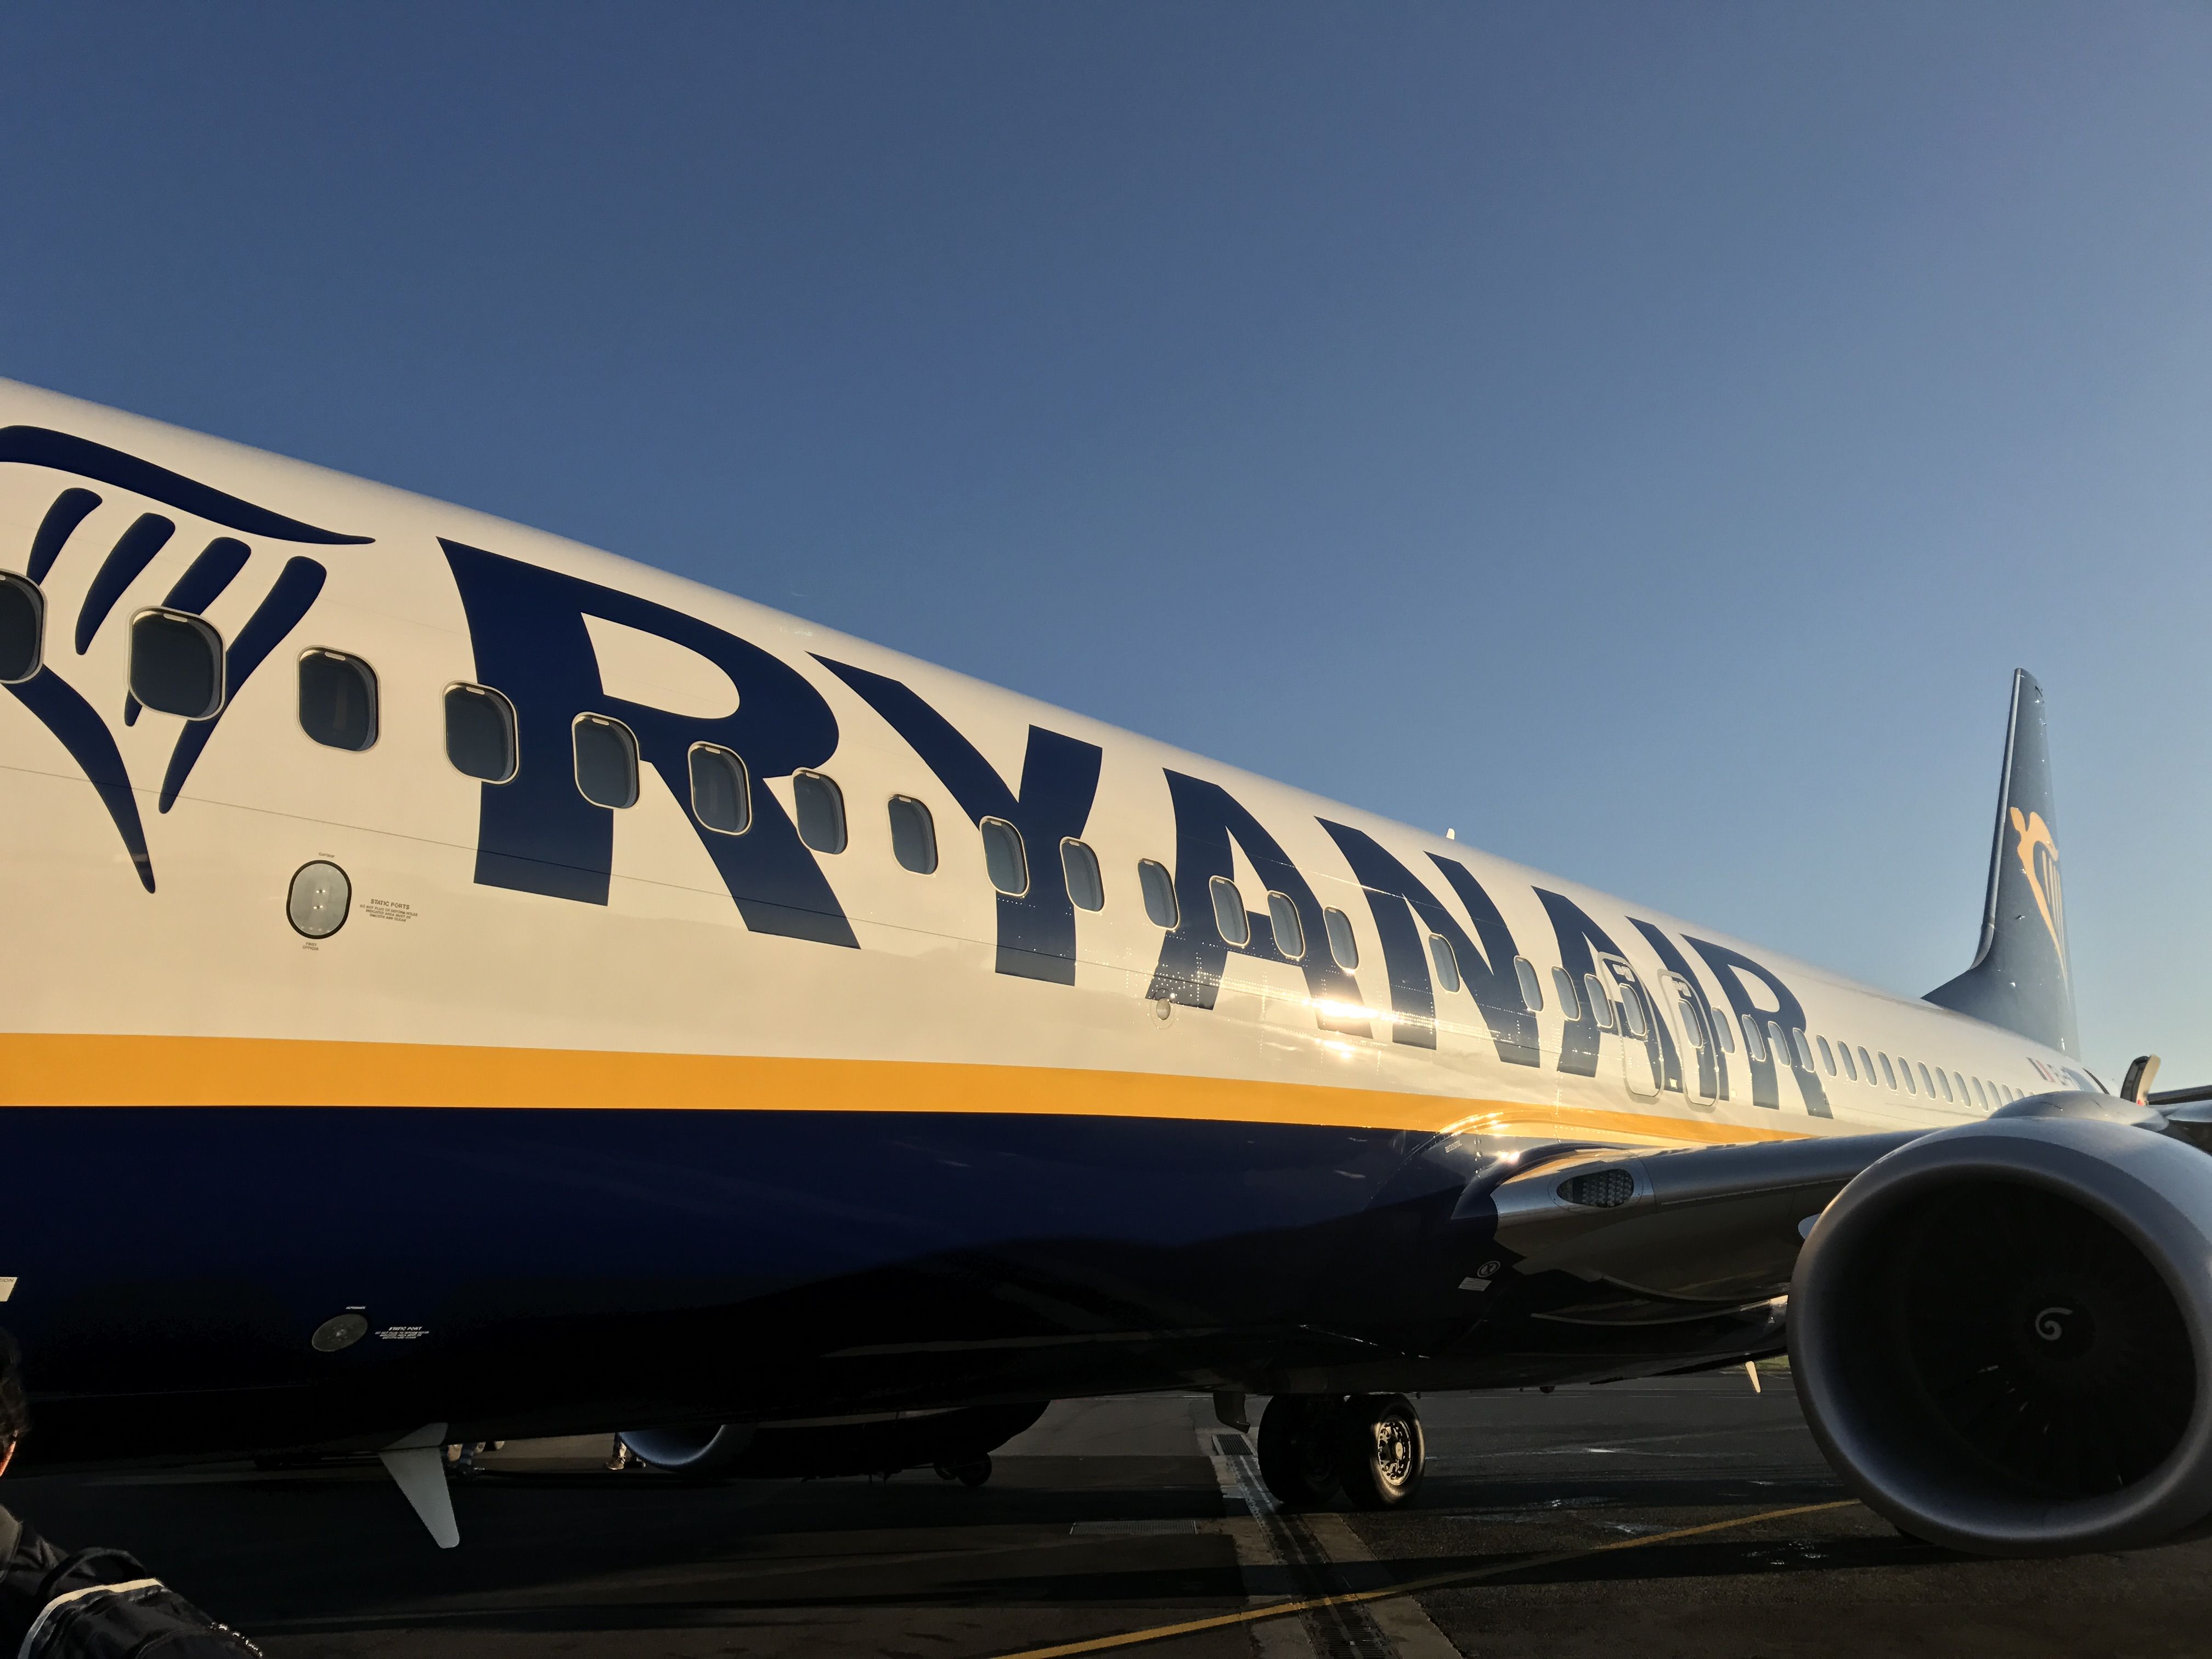 Biglietti Ryanair gratis. L'amministratore delegato della compagnia aerea lancia la rivoluzionaria proposta